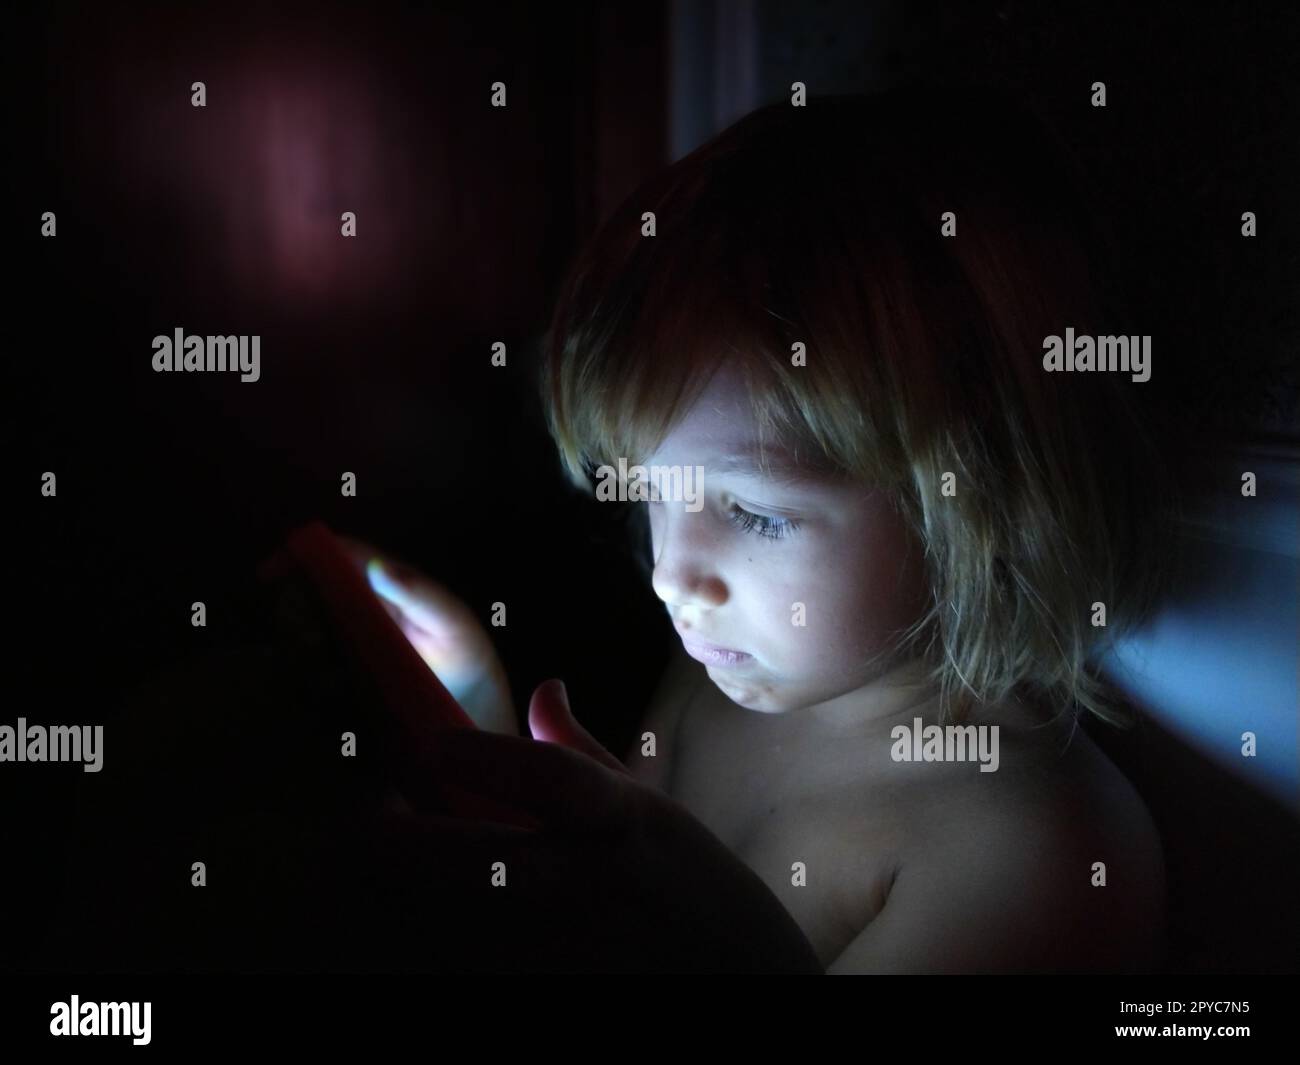 Süßes kleines Mädchen spielt mit einem Tablet-Computer. Ein 7-jähriges Kind mit einem ernsten Gesicht und blonden Haaren sieht in ein Gerät. Speicherplatz kopieren. Mädchen im Zimmer. Dunkle und helle Wand. Zu Hause in der Nacht Stockfoto